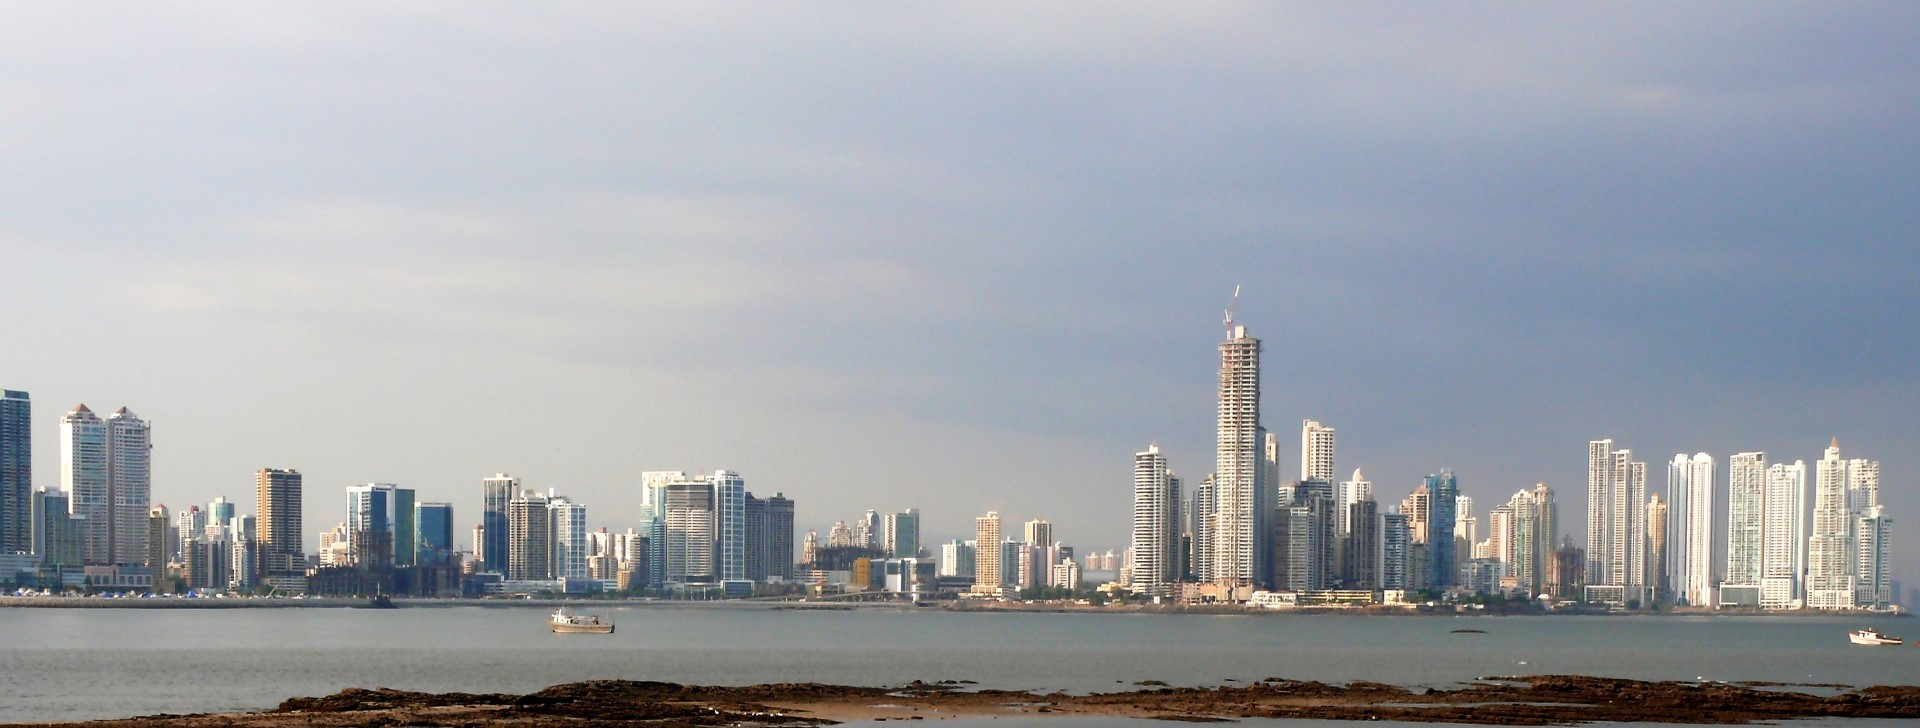 Auto rondreis door Panama City met uitzicht op skyline